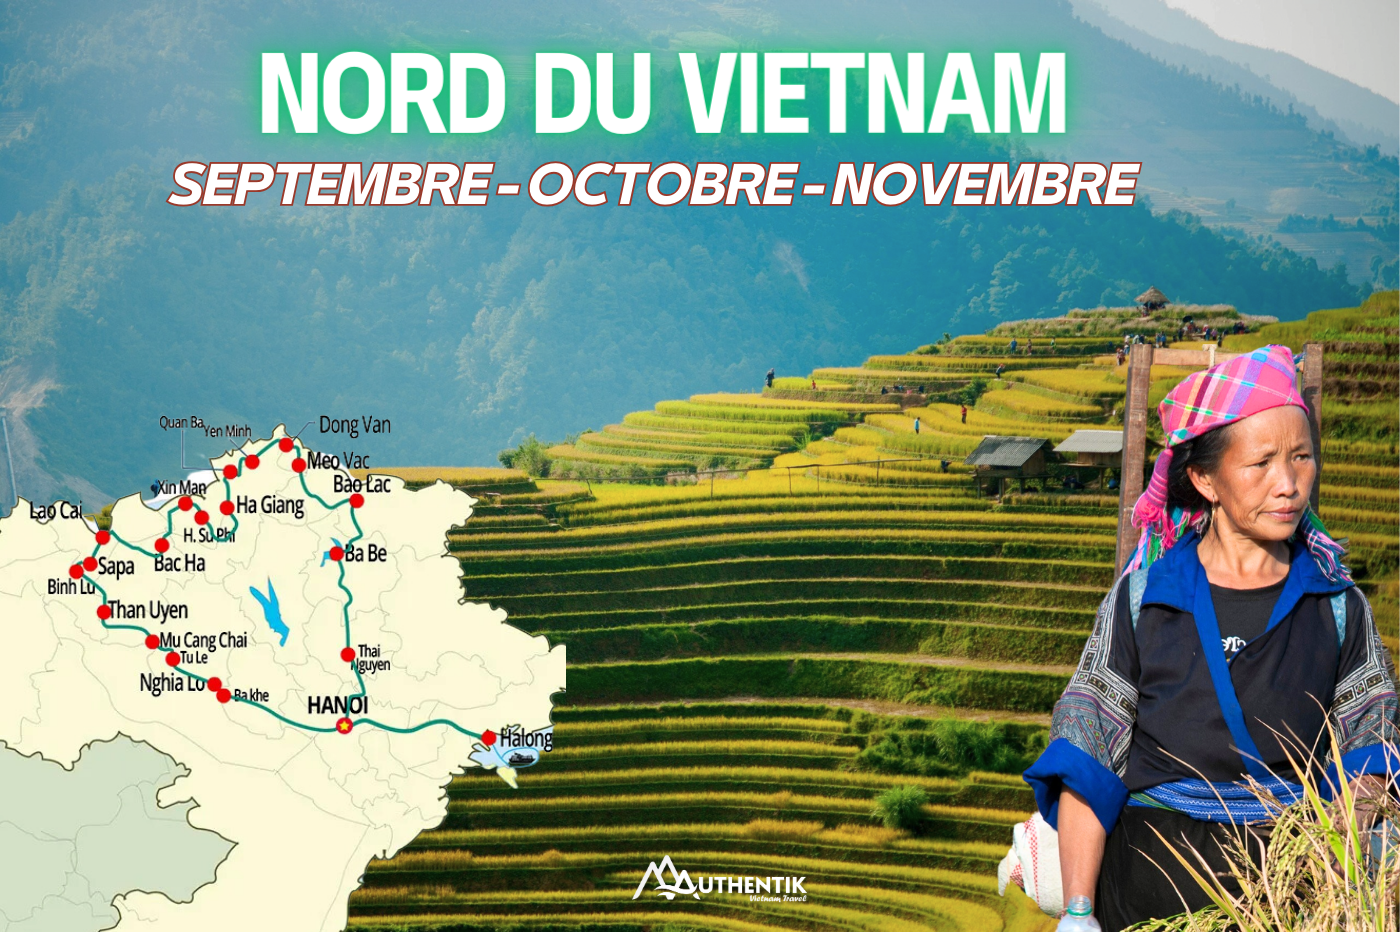 5 raisons pour visiter le Nord du Vietnam en automne ( Septembre - Octobre - Novembre )